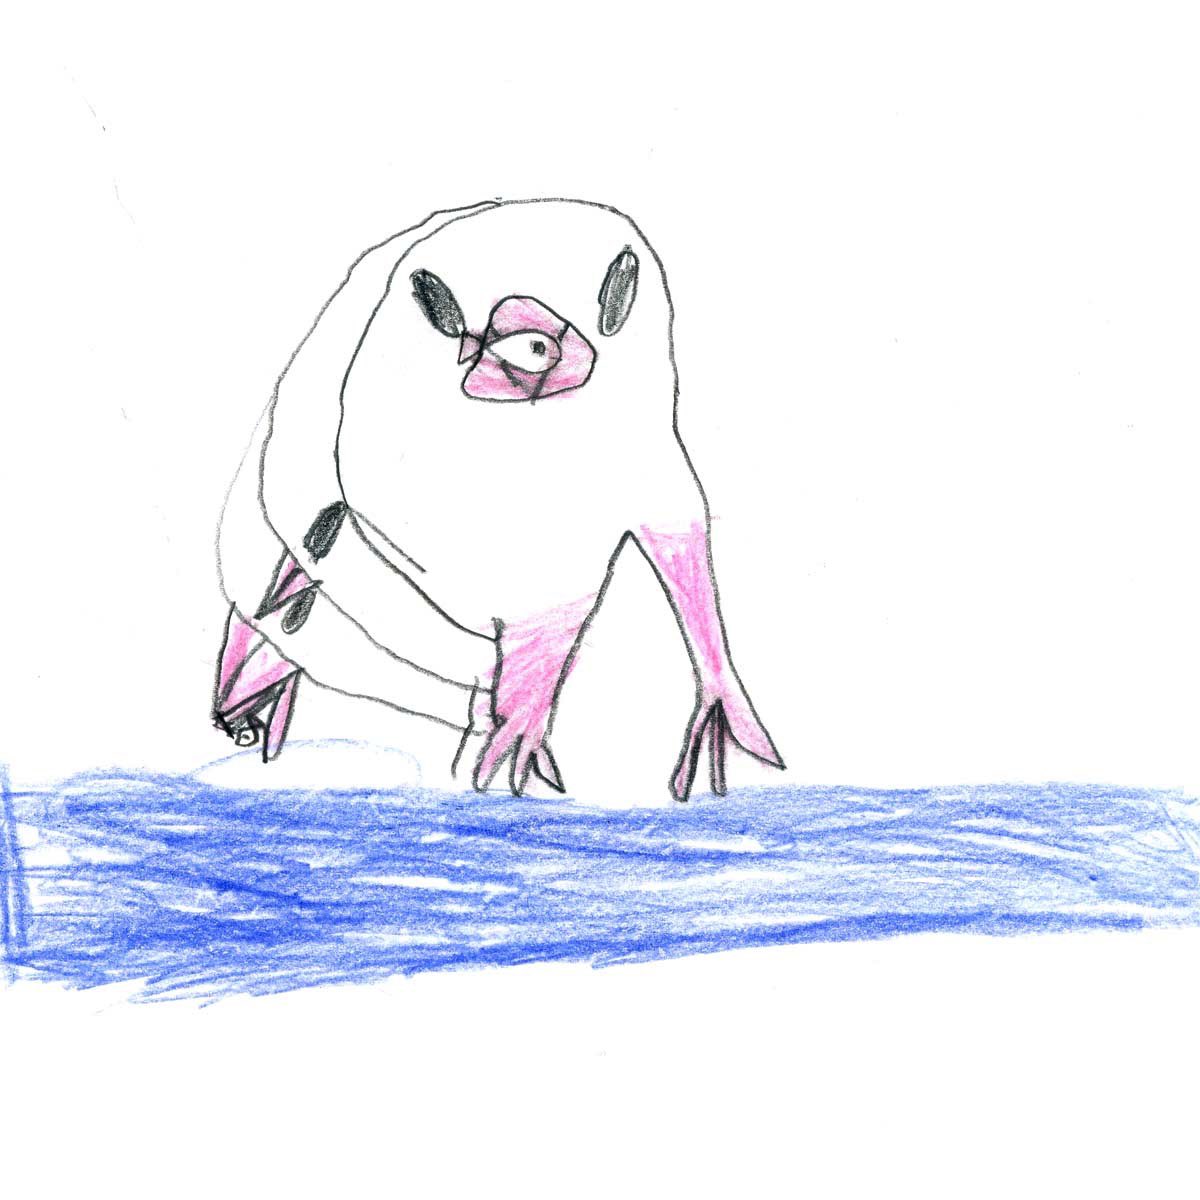 「6歳児作「文鳥が魚をつかまえて食べようとしているところ」「文鳥まねきねこ」 」|emiのイラスト